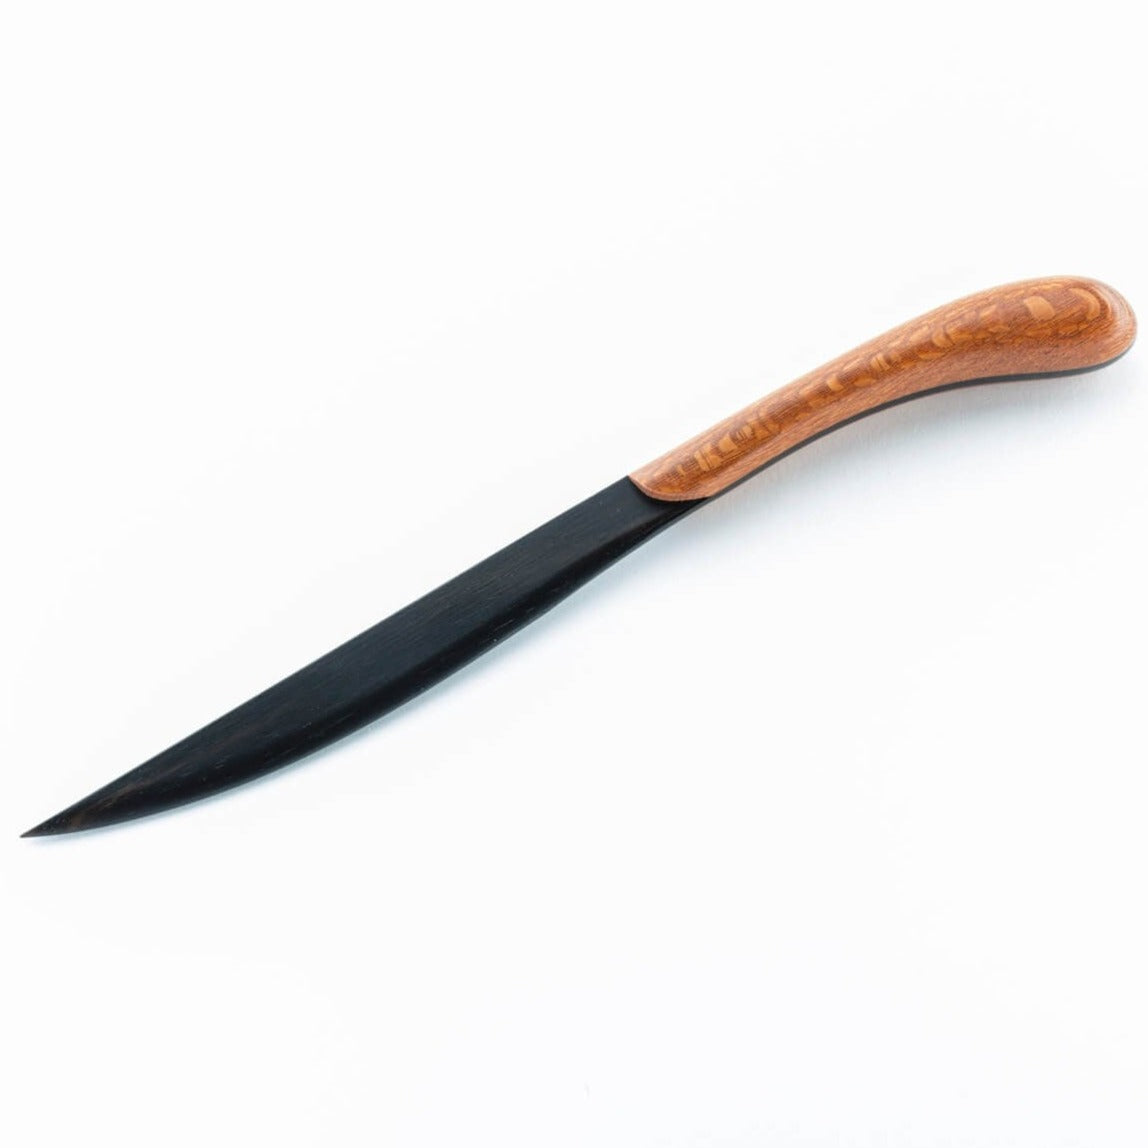 Handmade Wooden Letter Opener - Ebony Blade by Davin & Kesler